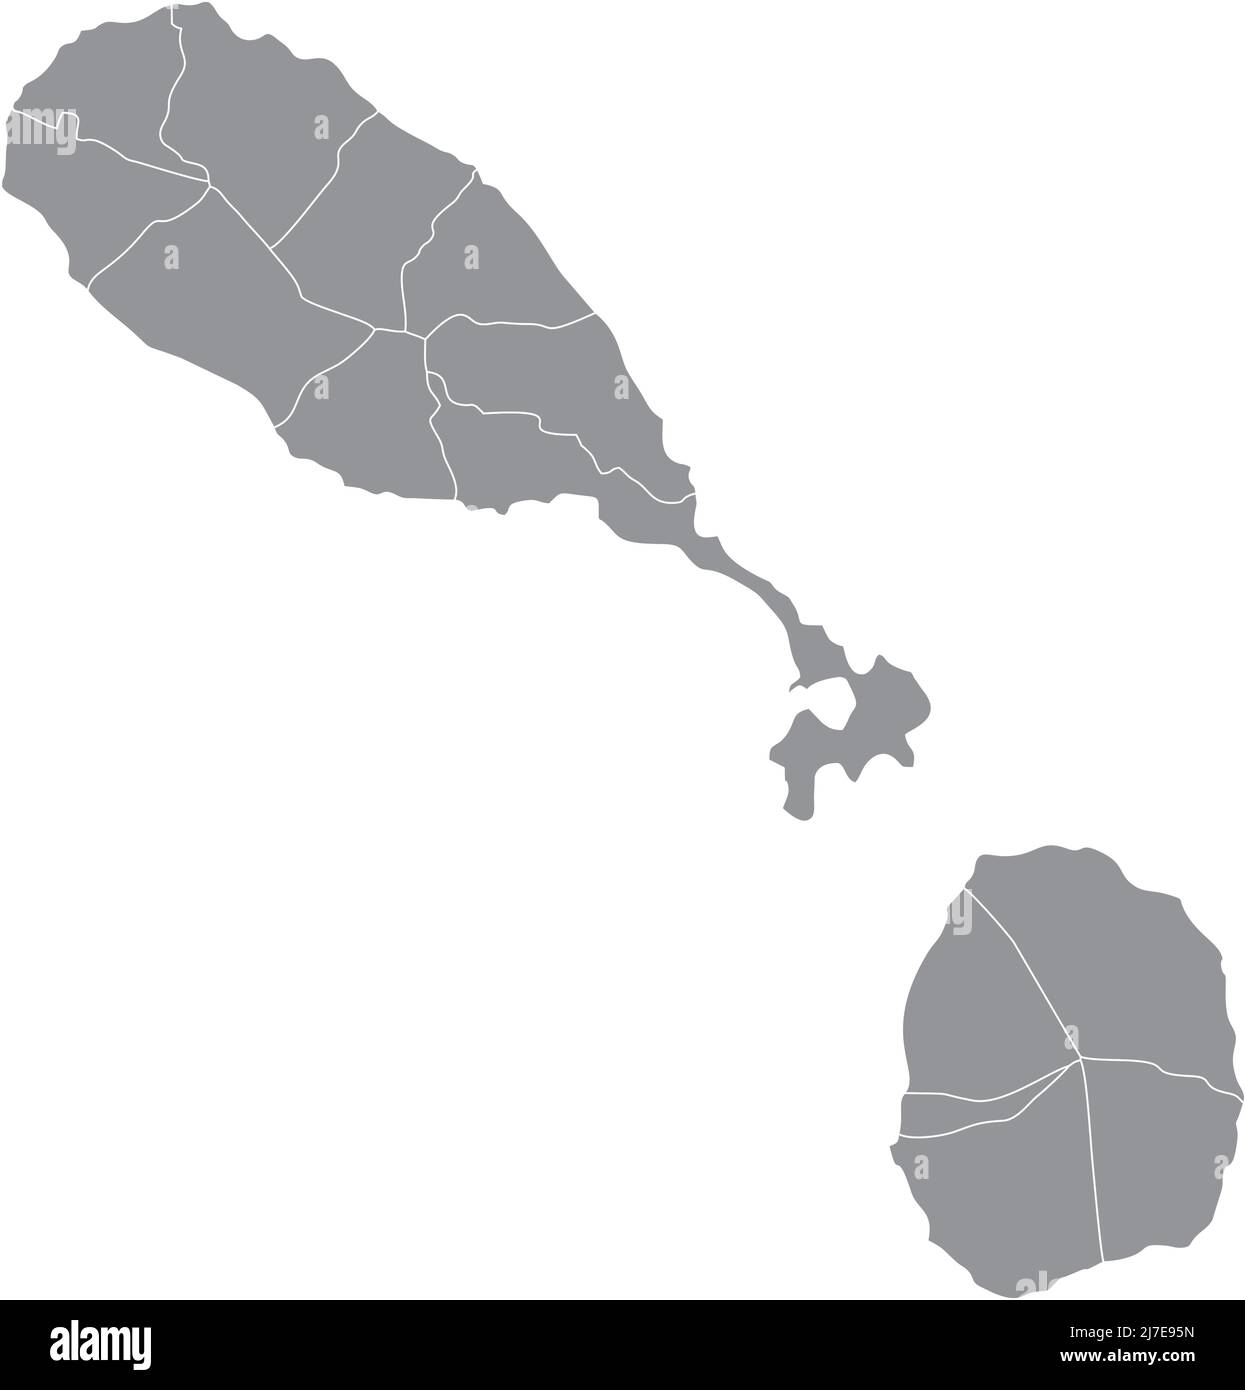 St. Christopher und Nevis Verwaltungskarte isoliert auf weißem Hintergrund Stock Vektor